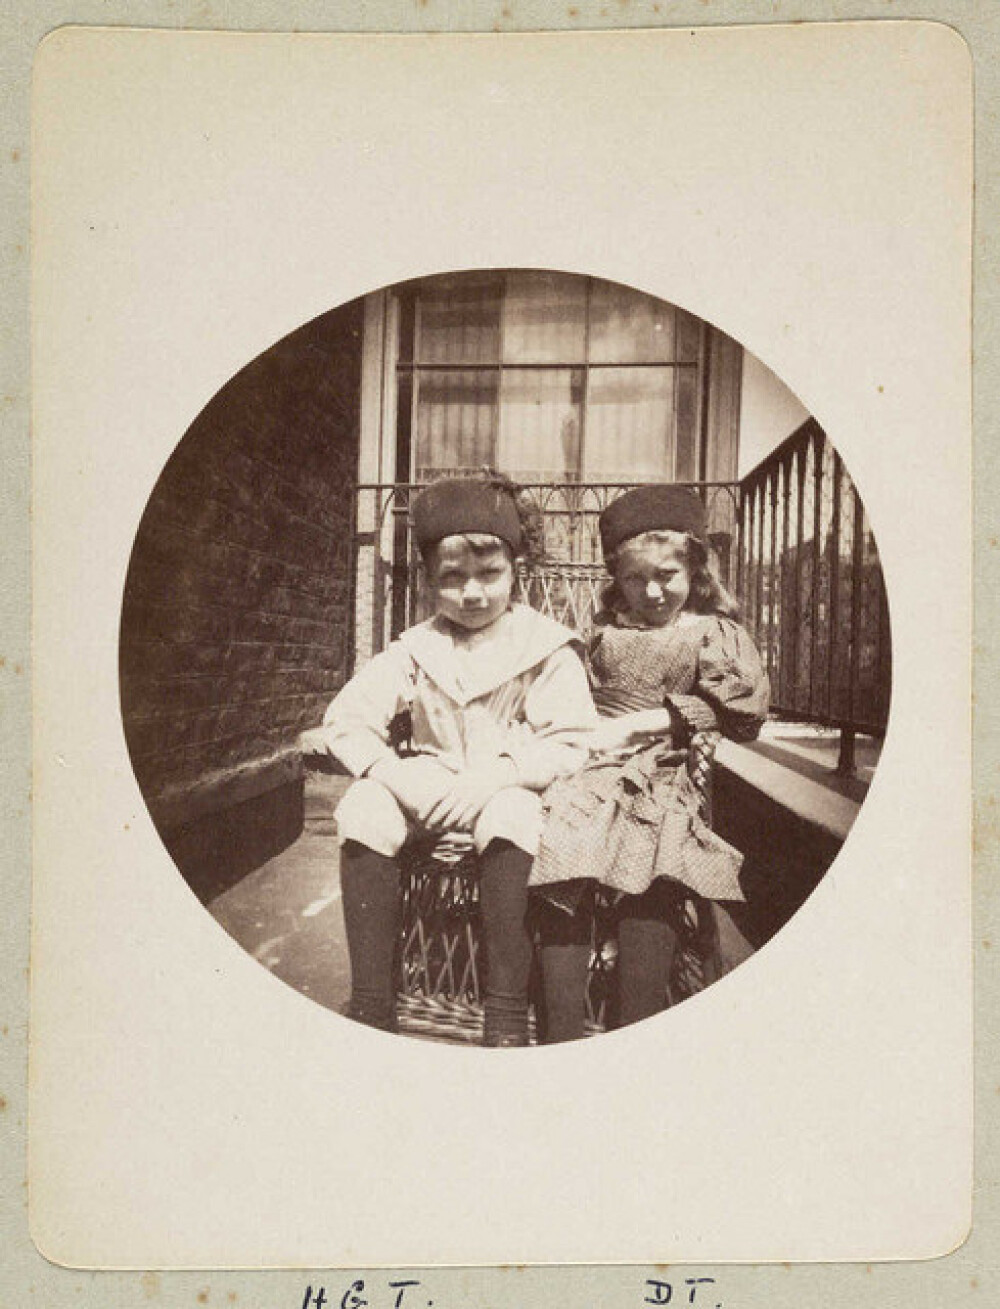 Imagini de acum 130 de ani. Primele fotografii de tip amator, realizate in 1880 - Imaginea 2